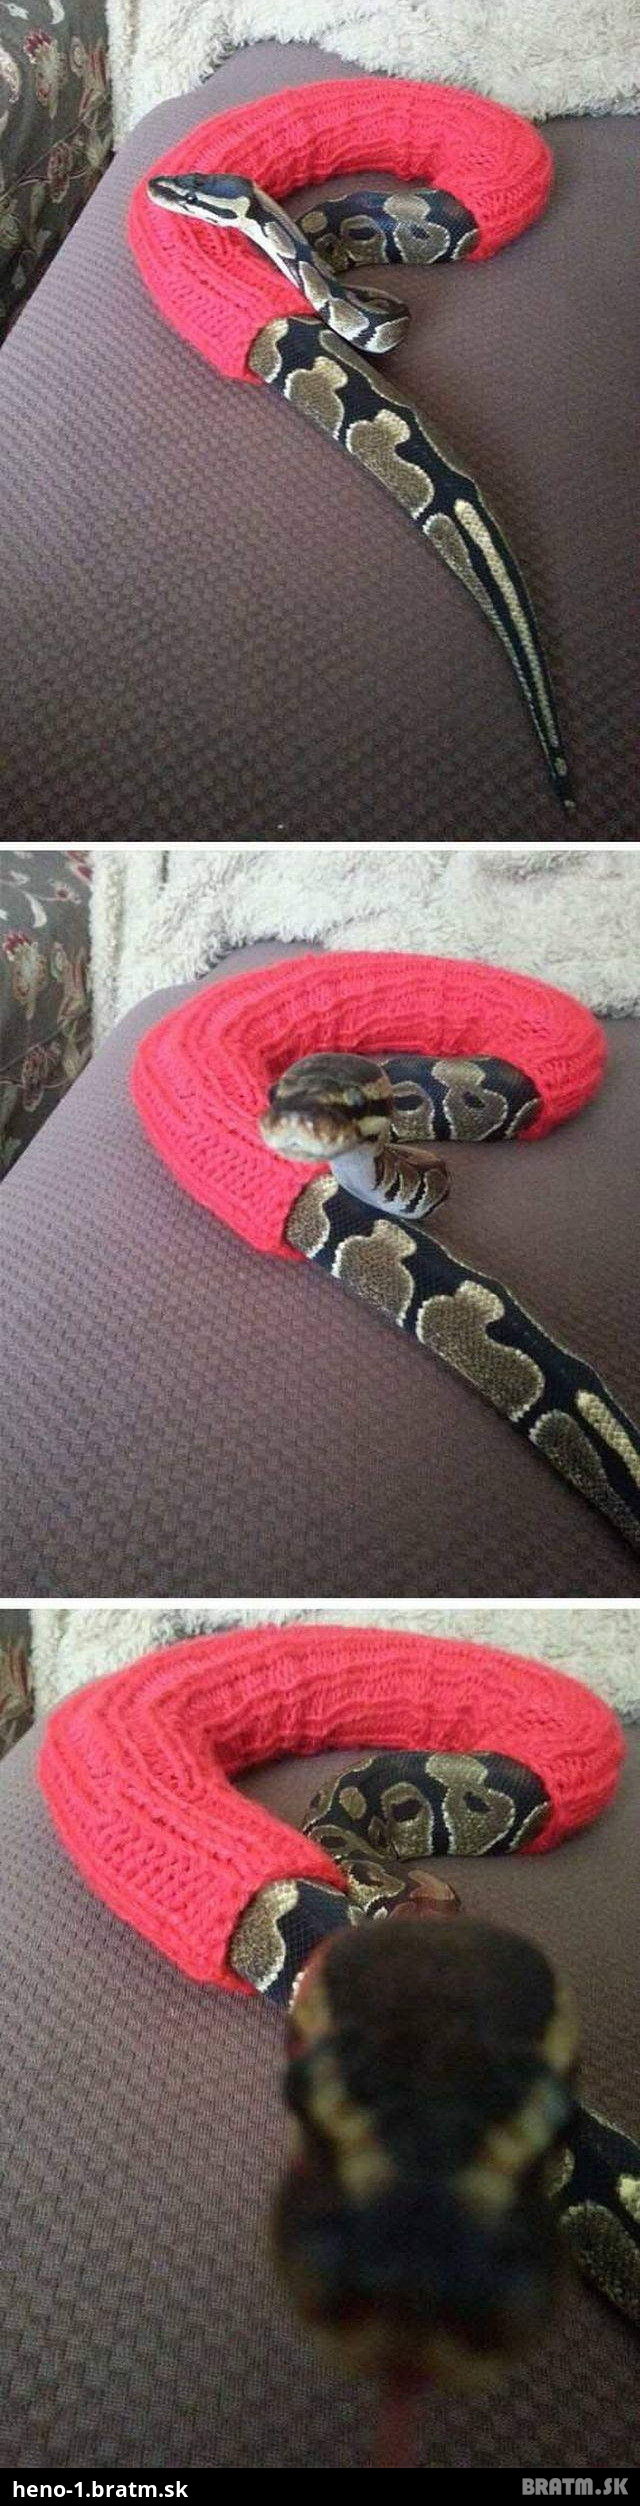 Videli ste už oblečeného hada?:D